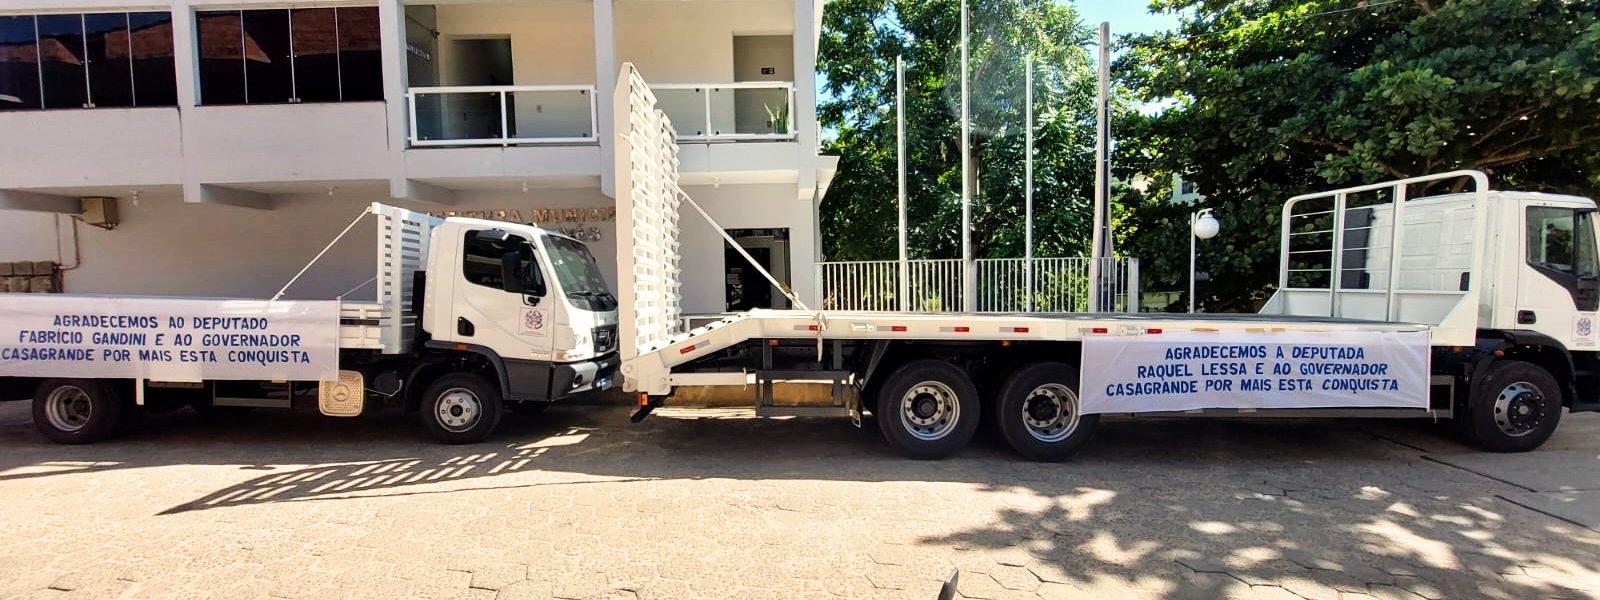 Município recebe caminhões para alavancar agricultura familiar